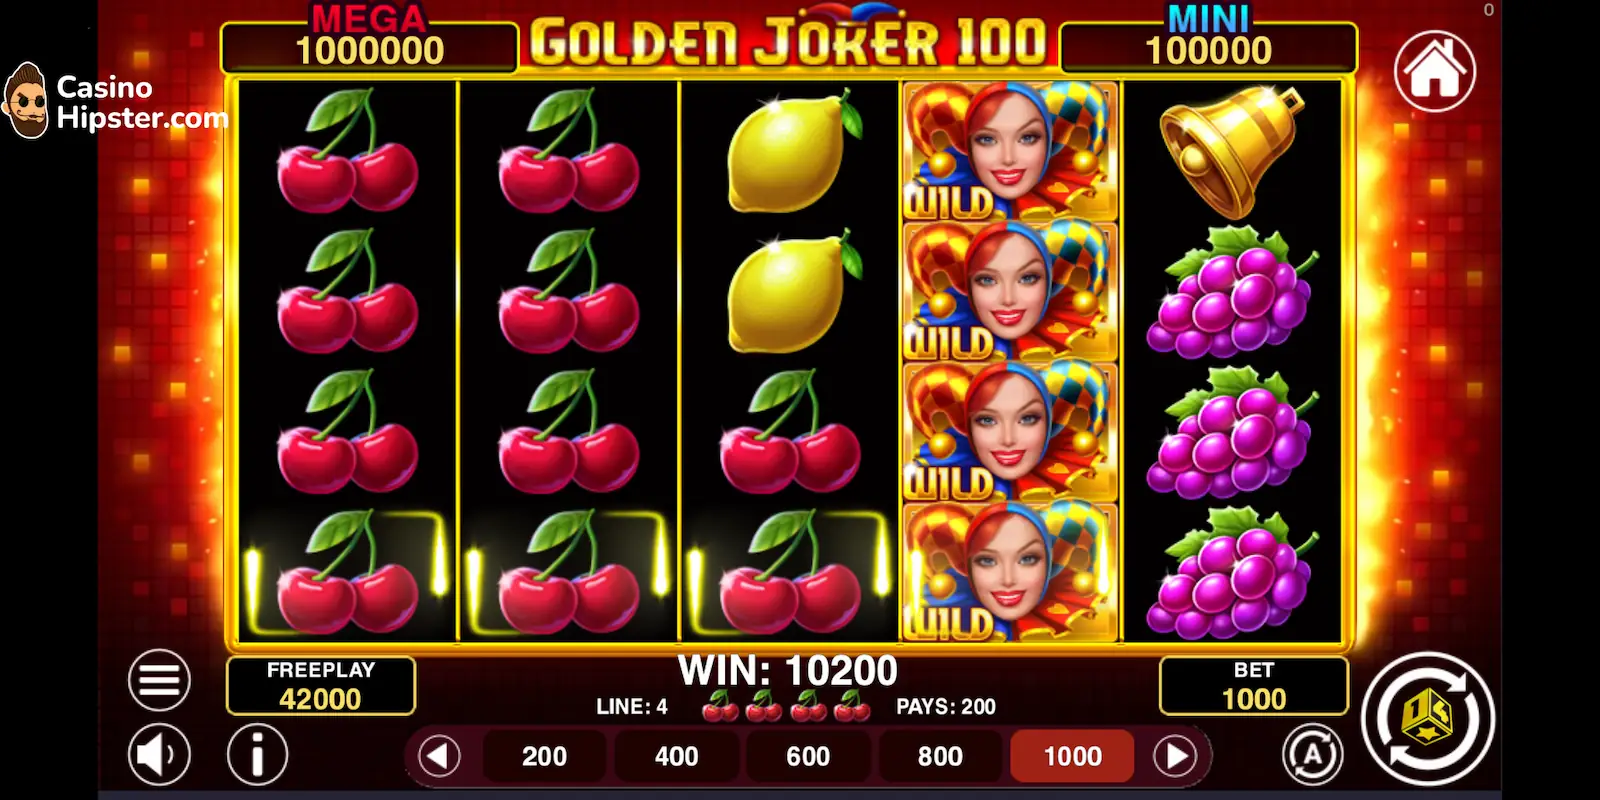 Golden Joker 100 Boni